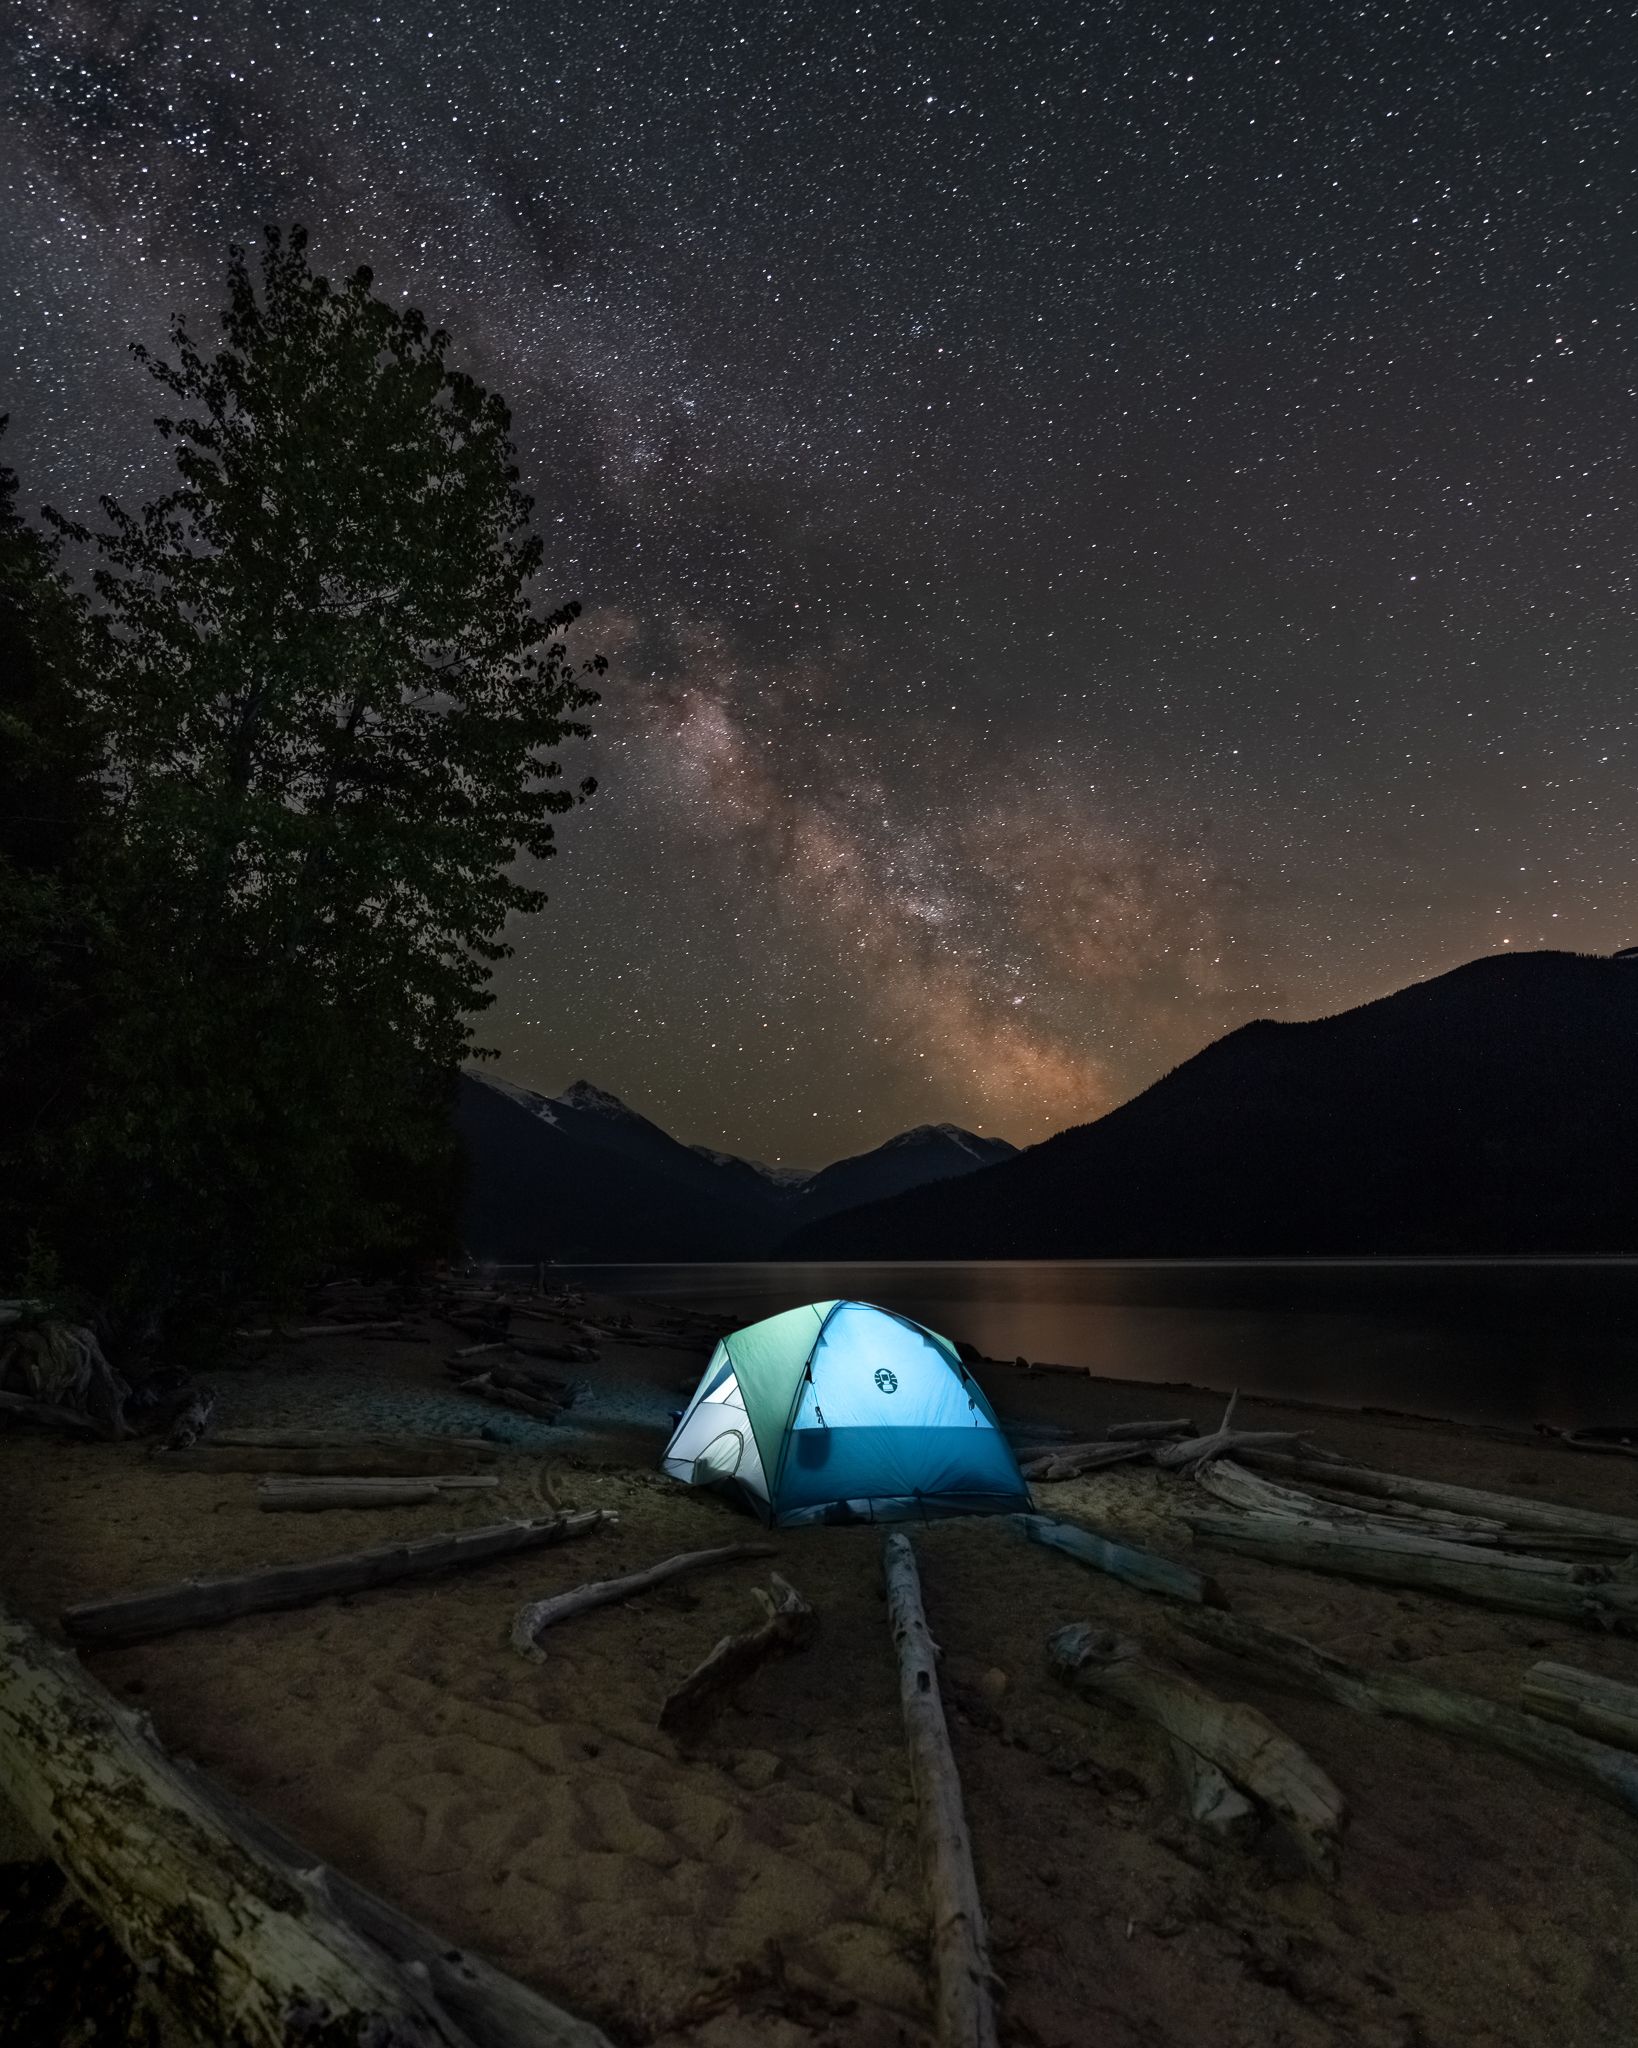 Milky way camping near Pemberton, BC